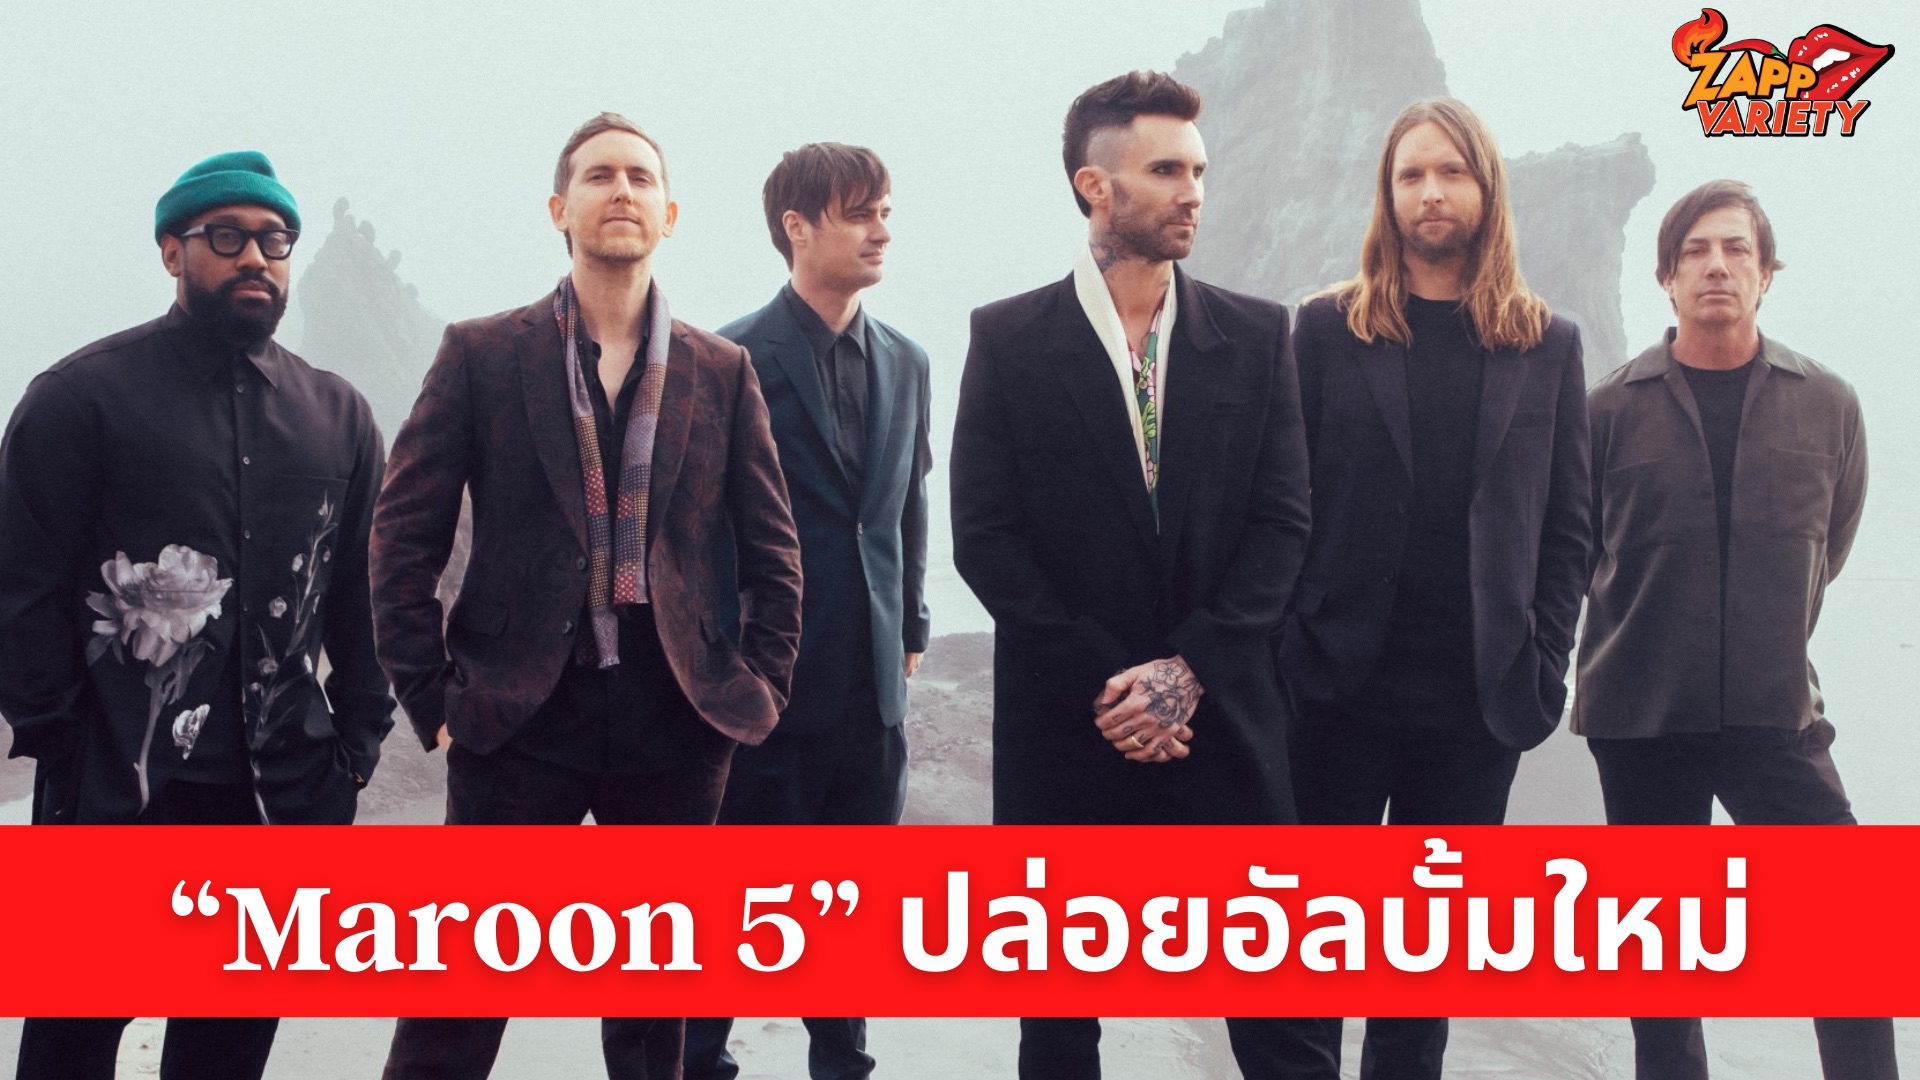  “Maroon 5” ปล่อยอัลบั้มใหม่ “JORDI” รำลึกถึงอดีตผู้จัดการวง ดึงทัพศิลปินในตำนาน และซูเปอร์สตาร์ร่วมแจม พร้อมเปิดตัวเอ็มวีใหม่ ”Lost” 